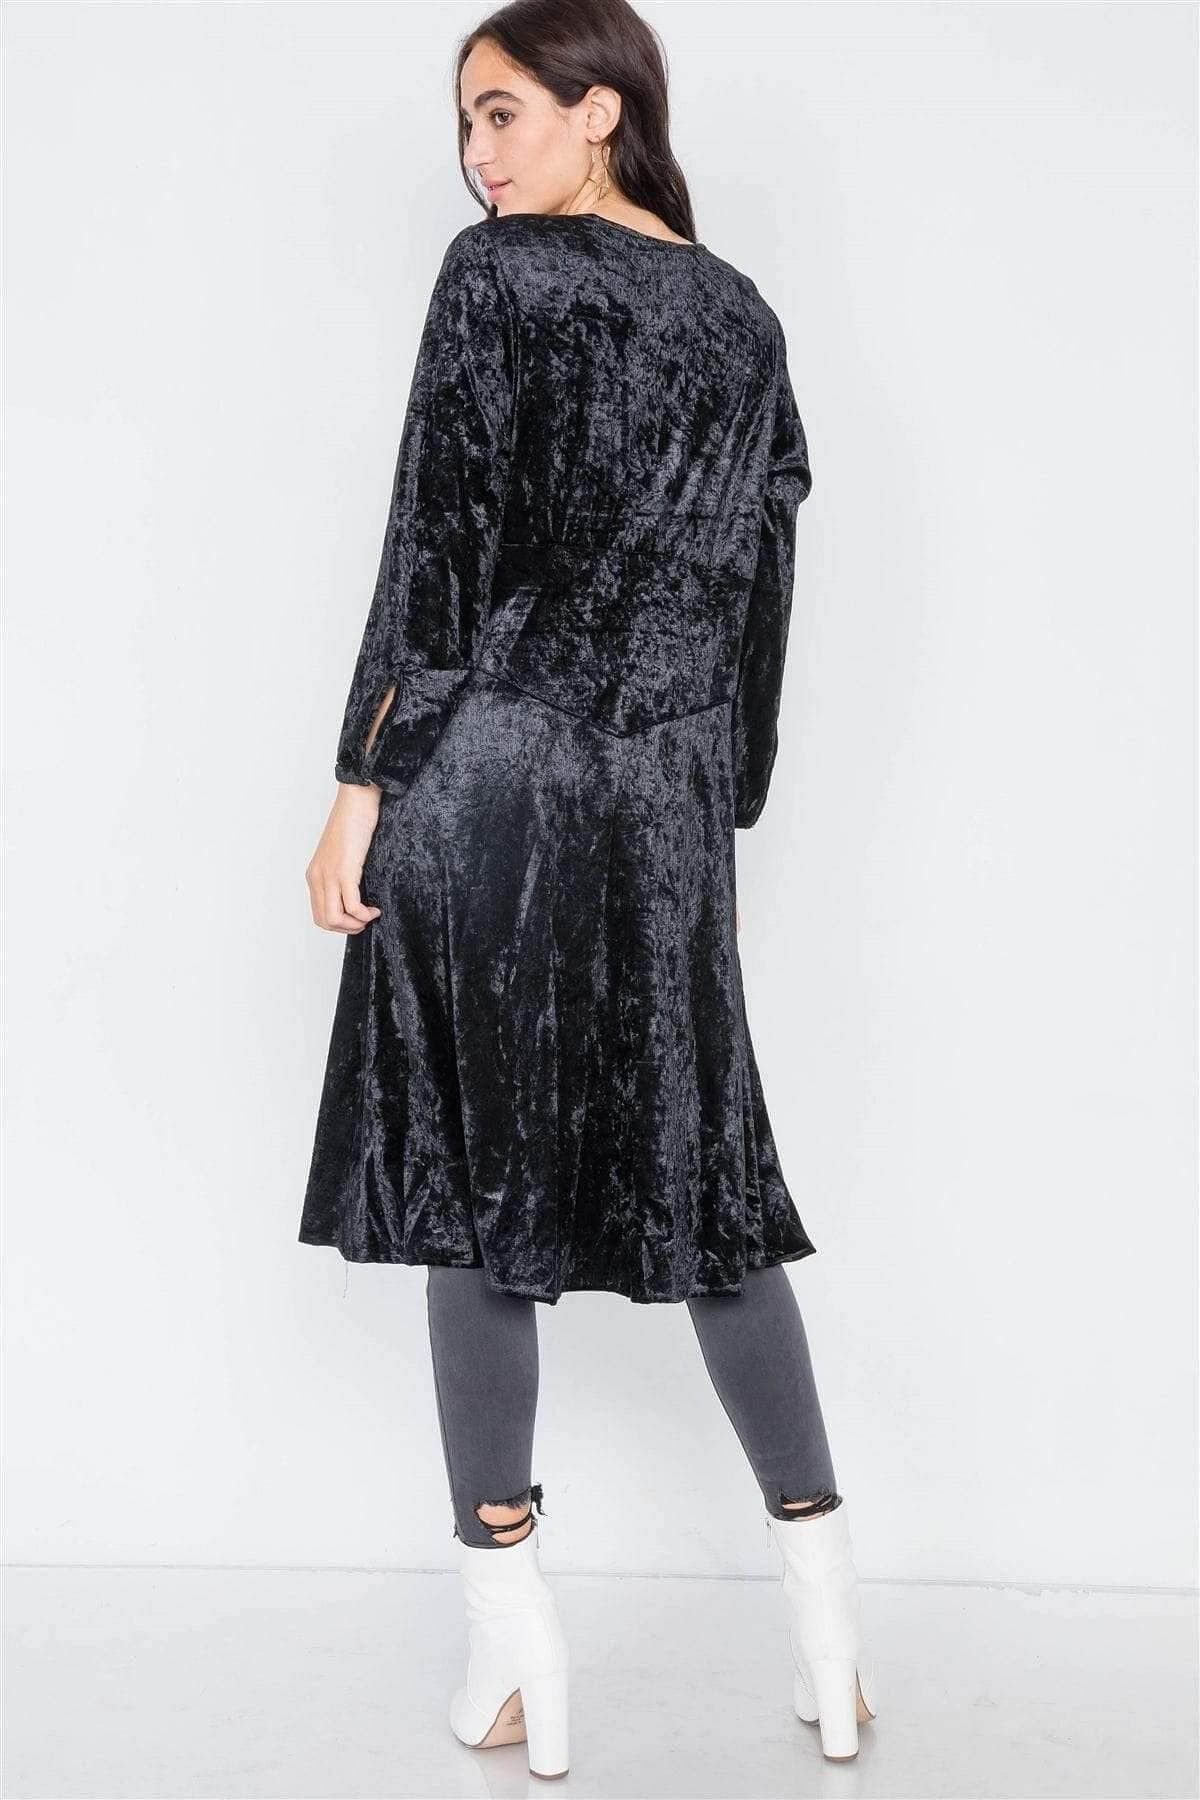 Black Long Sleeve Velvet Jacket - Shopping Therapy Jacket